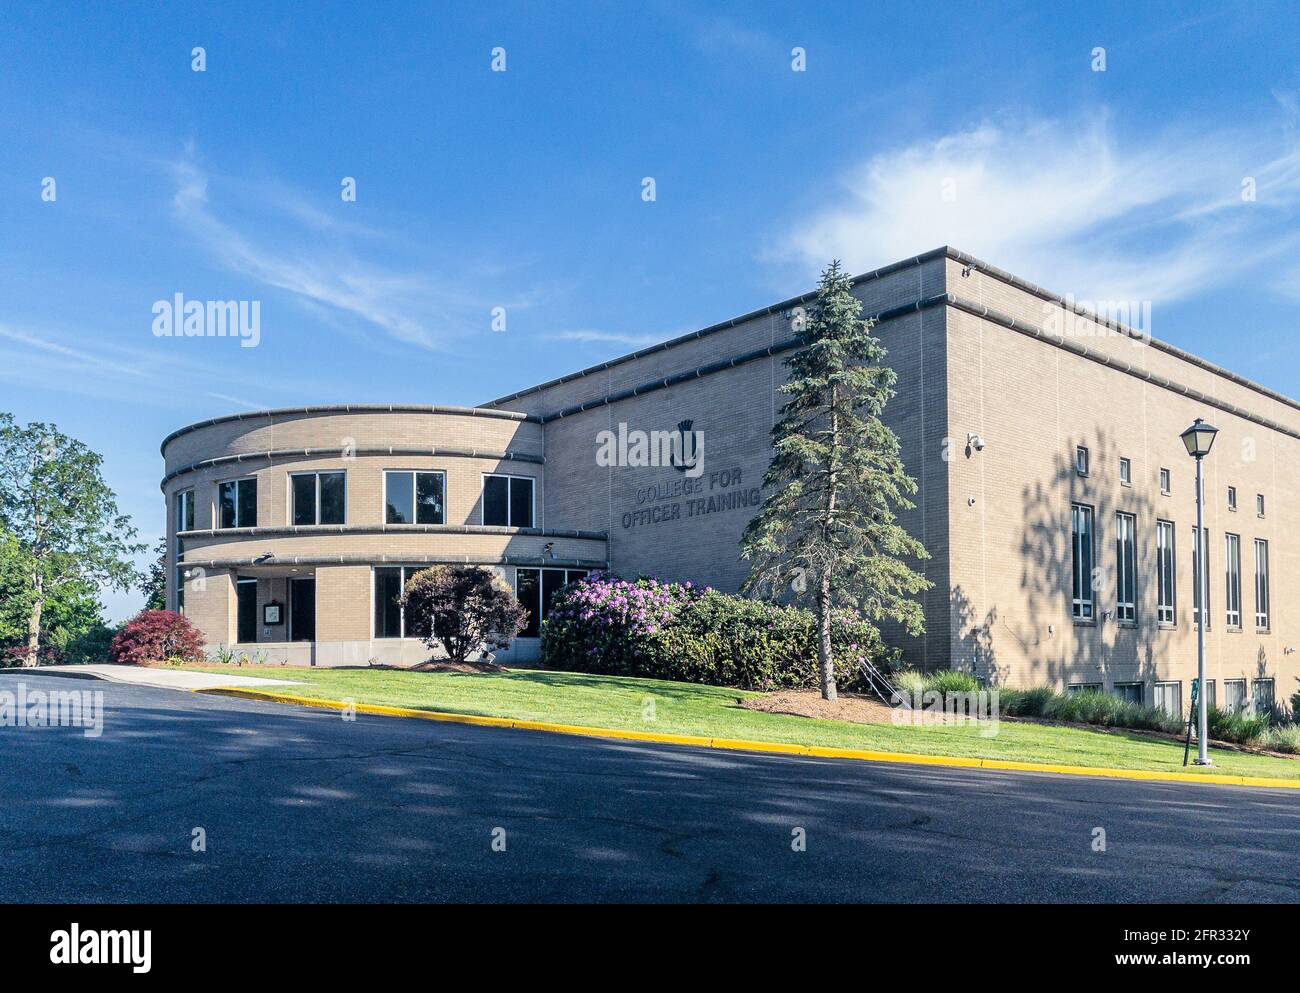 Suffern, NY - USA - 20. Mai 2021: Landschaftsansicht des The Salvation Army College for Officer Training. Ein Anstiktiton der Hochschulbildung zu entwickeln Stockfoto